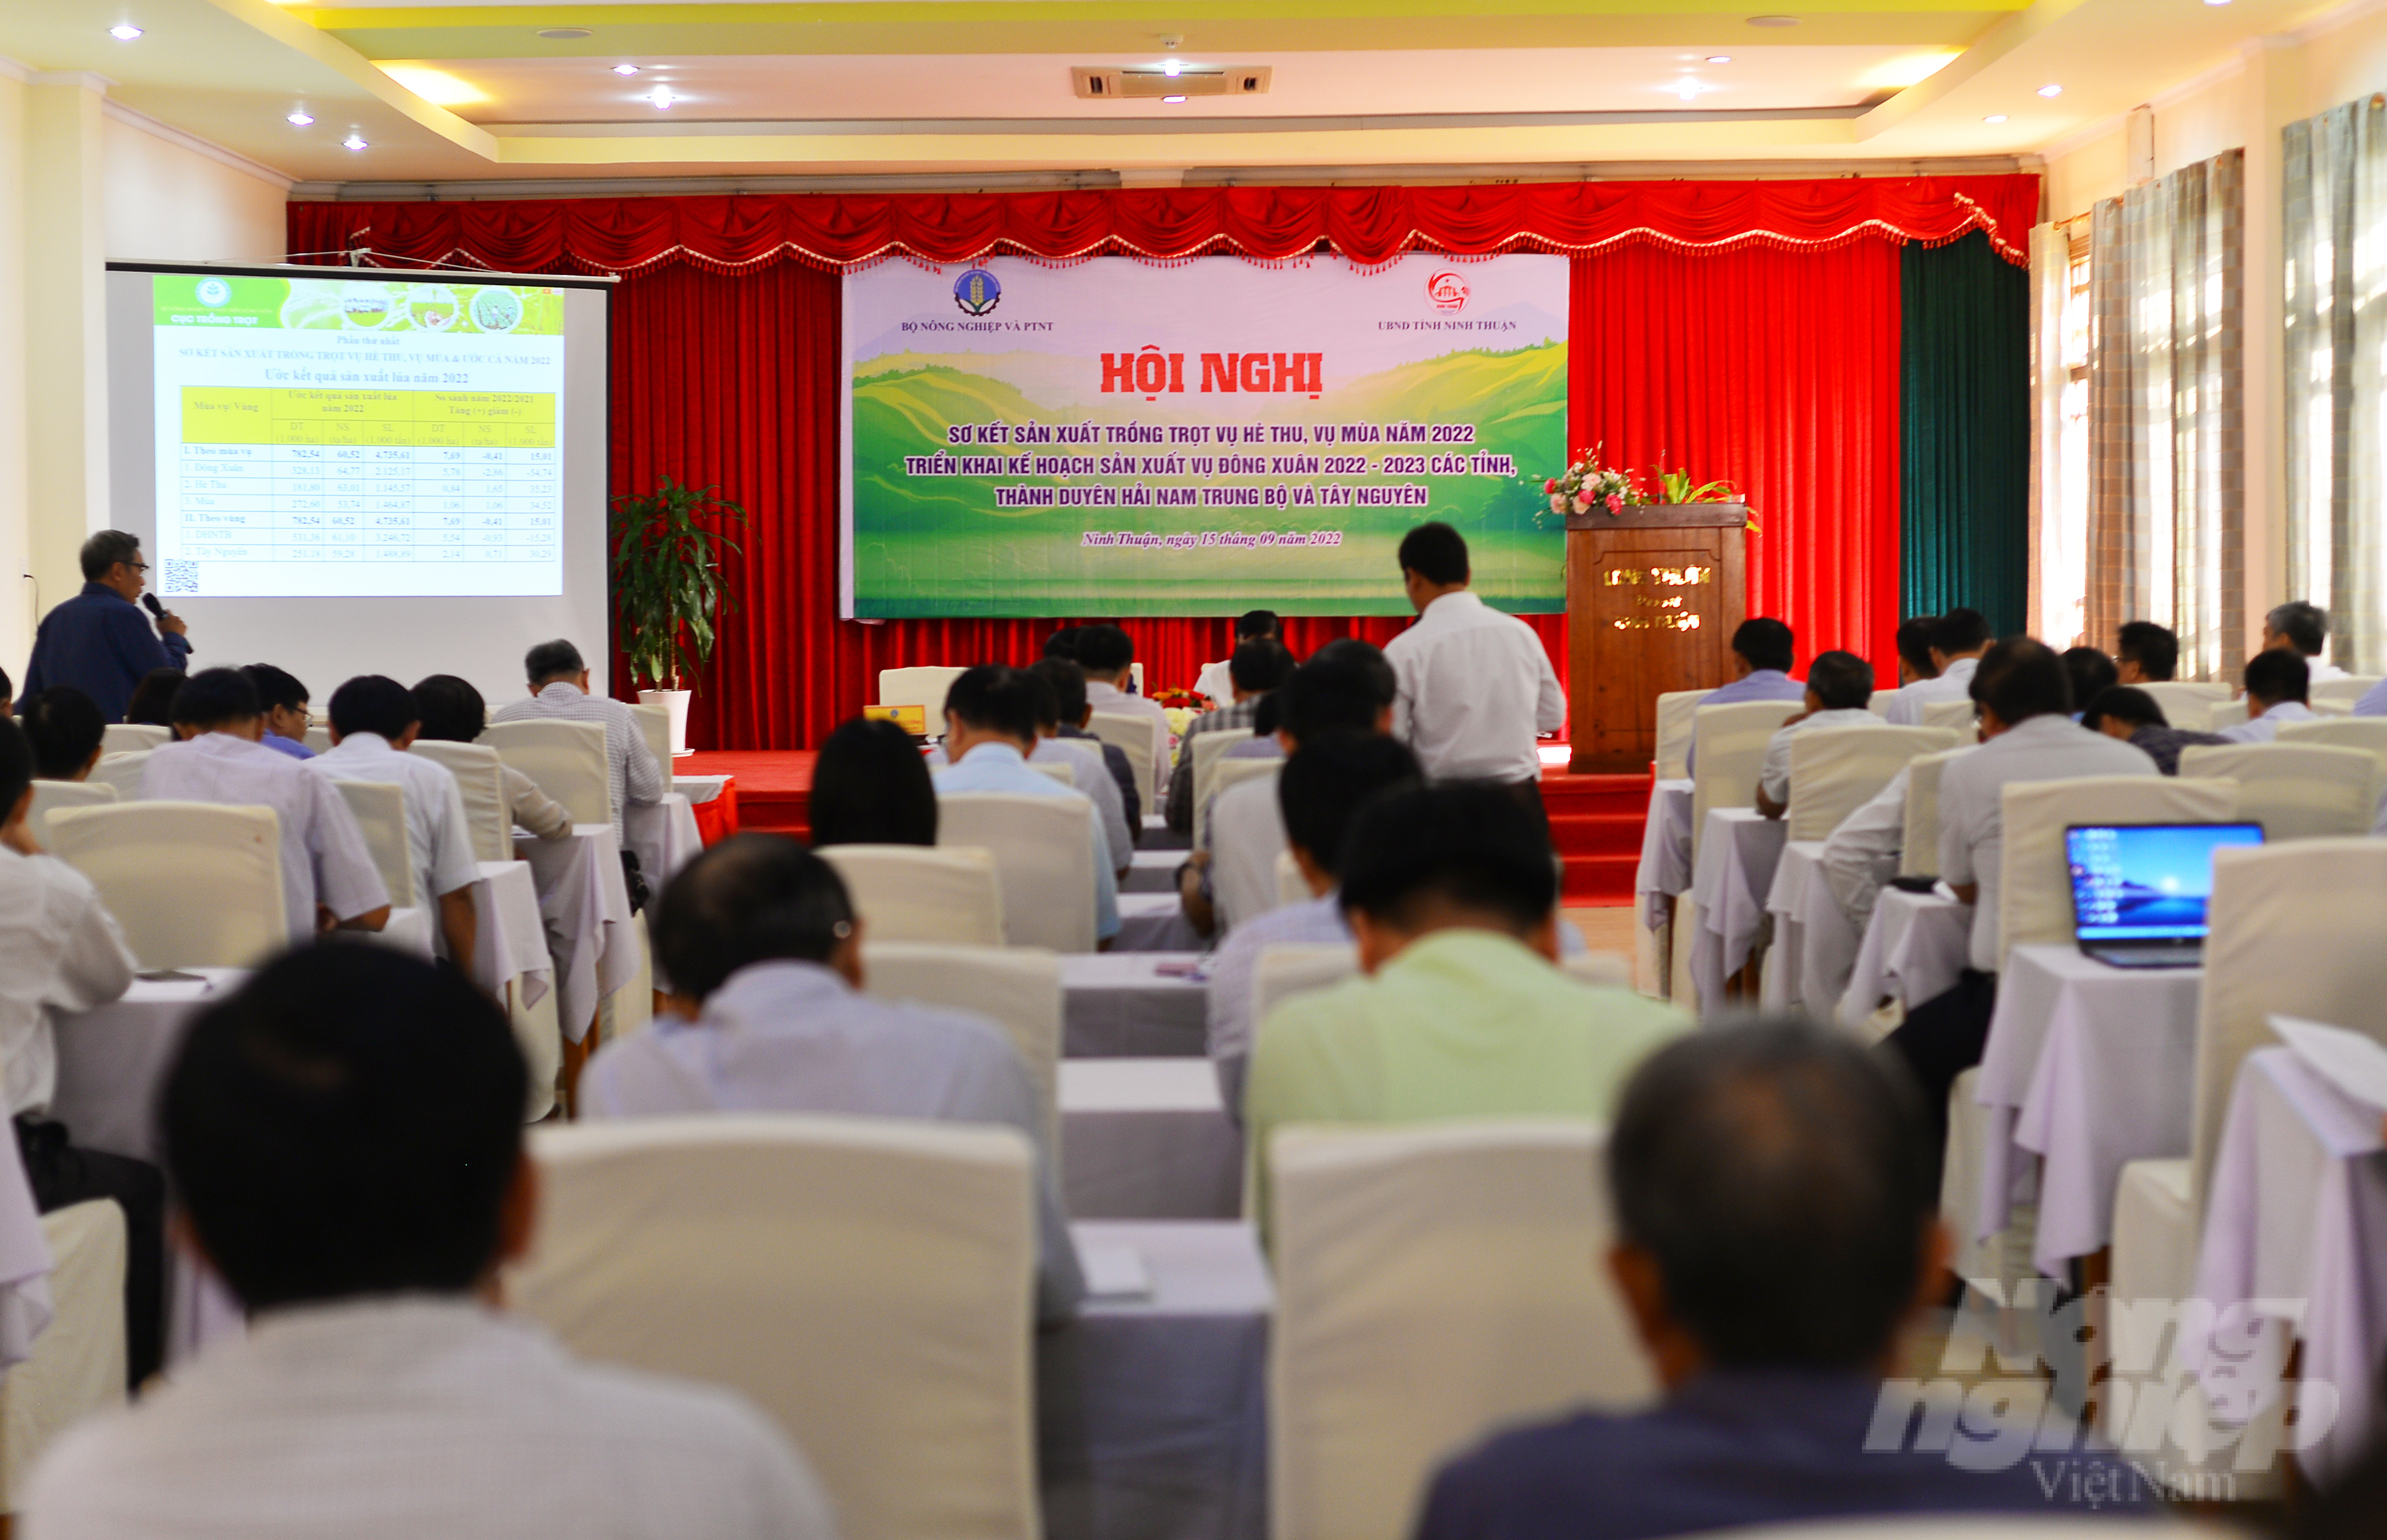 Hội nghị diễn ra tại tỉnh Ninh Thuận do Thứ trưởng Bộ NN-PTNT Lê Quốc Doanh chủ trì. Ảnh: M.H.